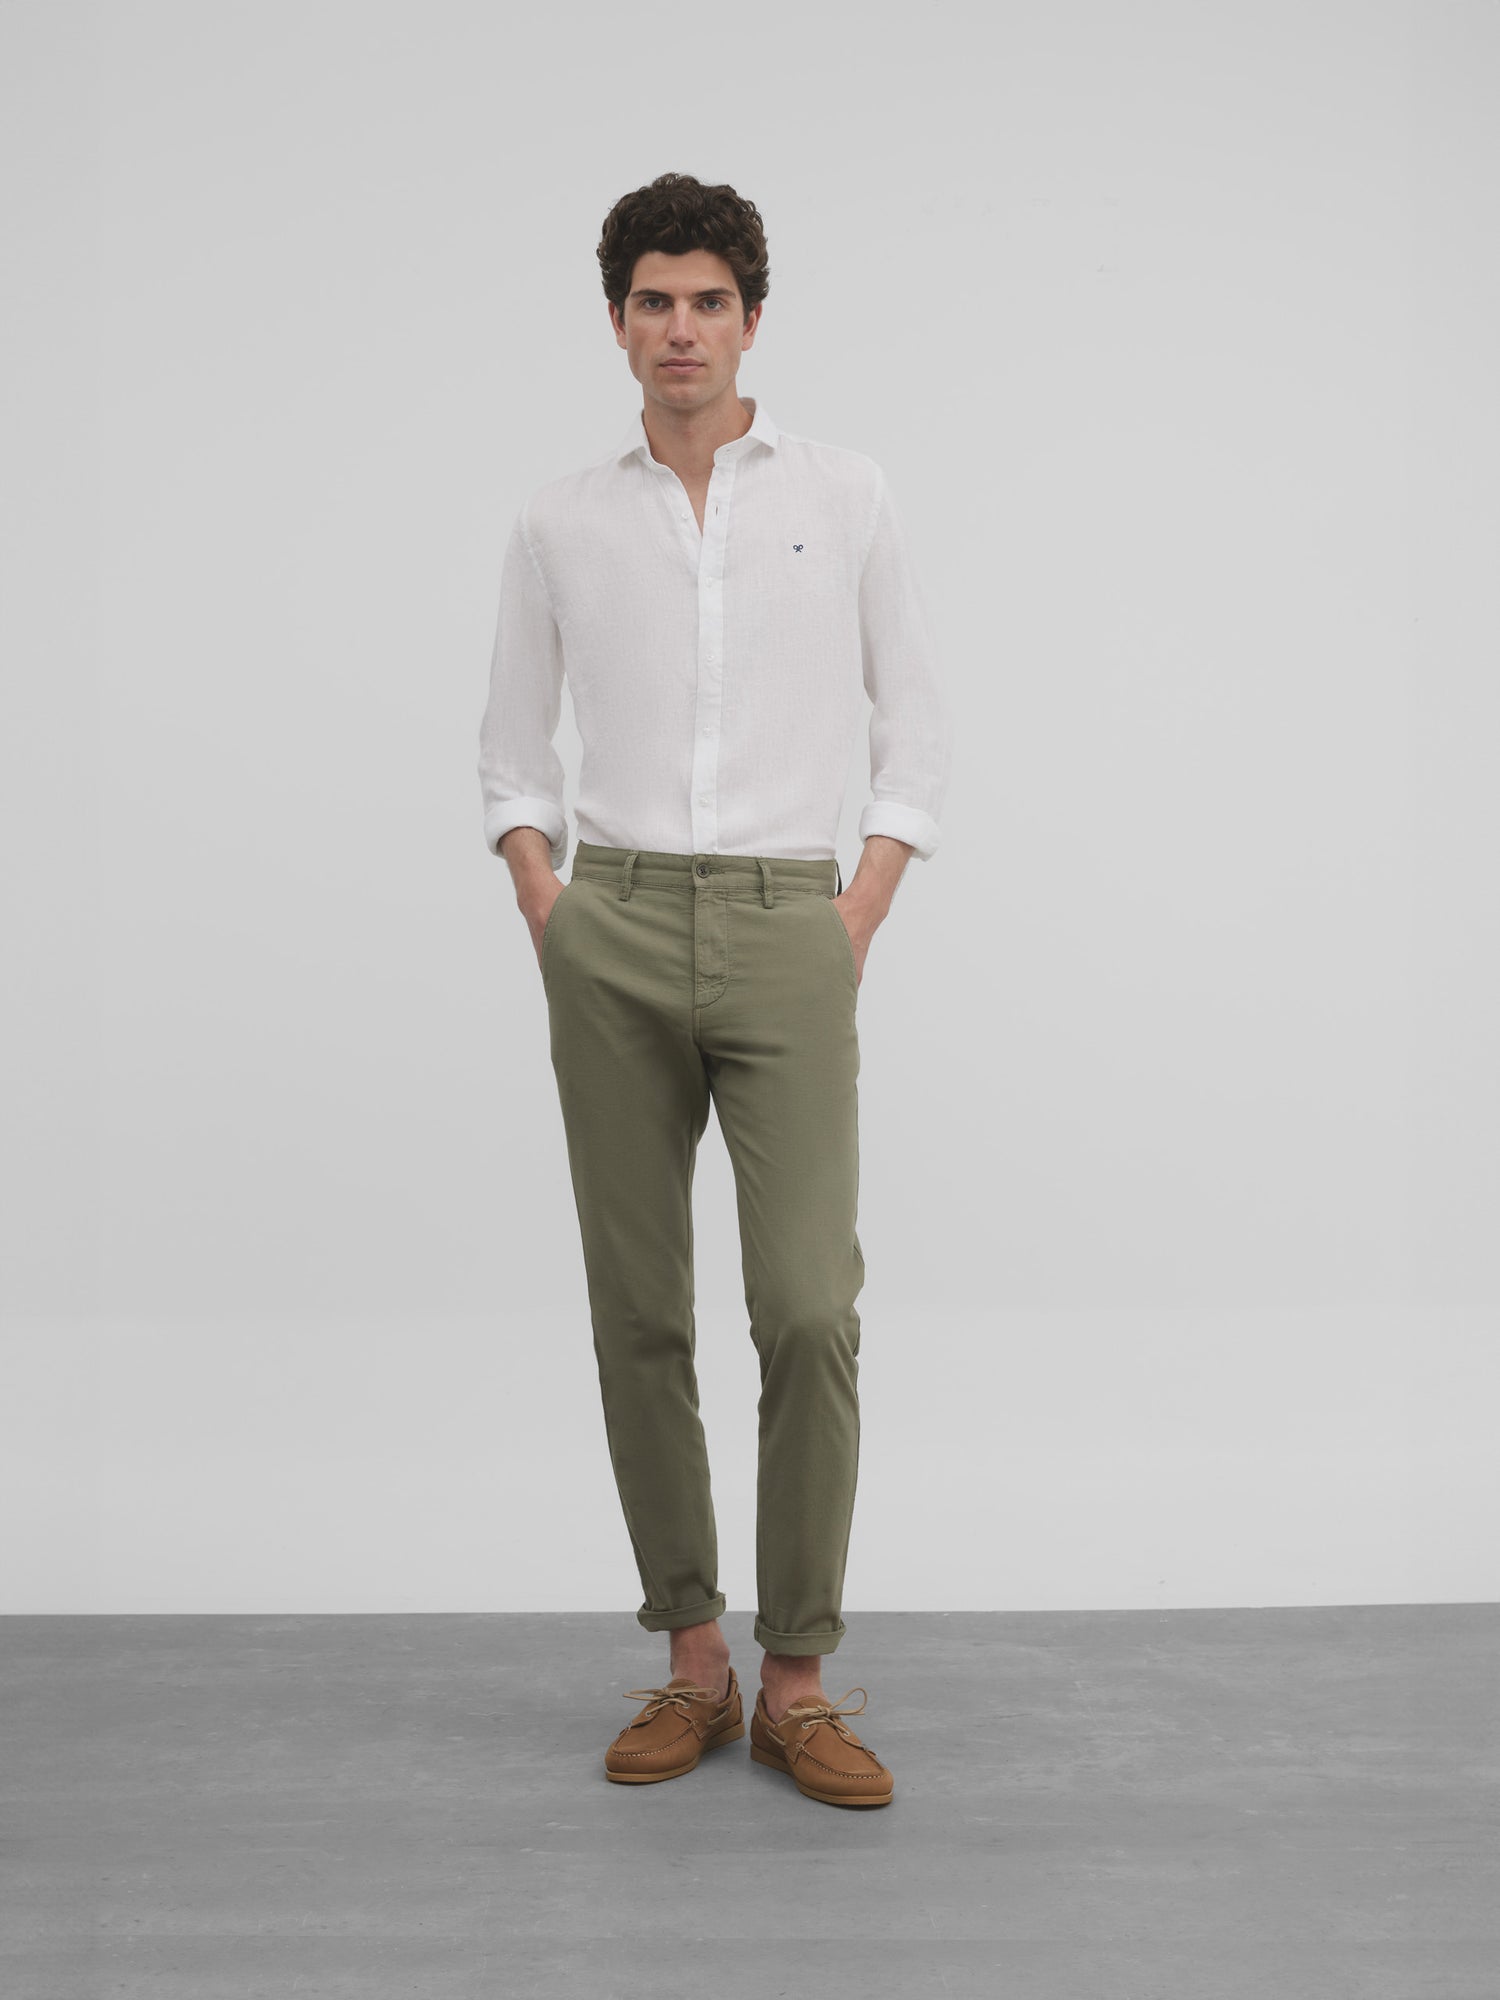 Green linen Chinese sport pants